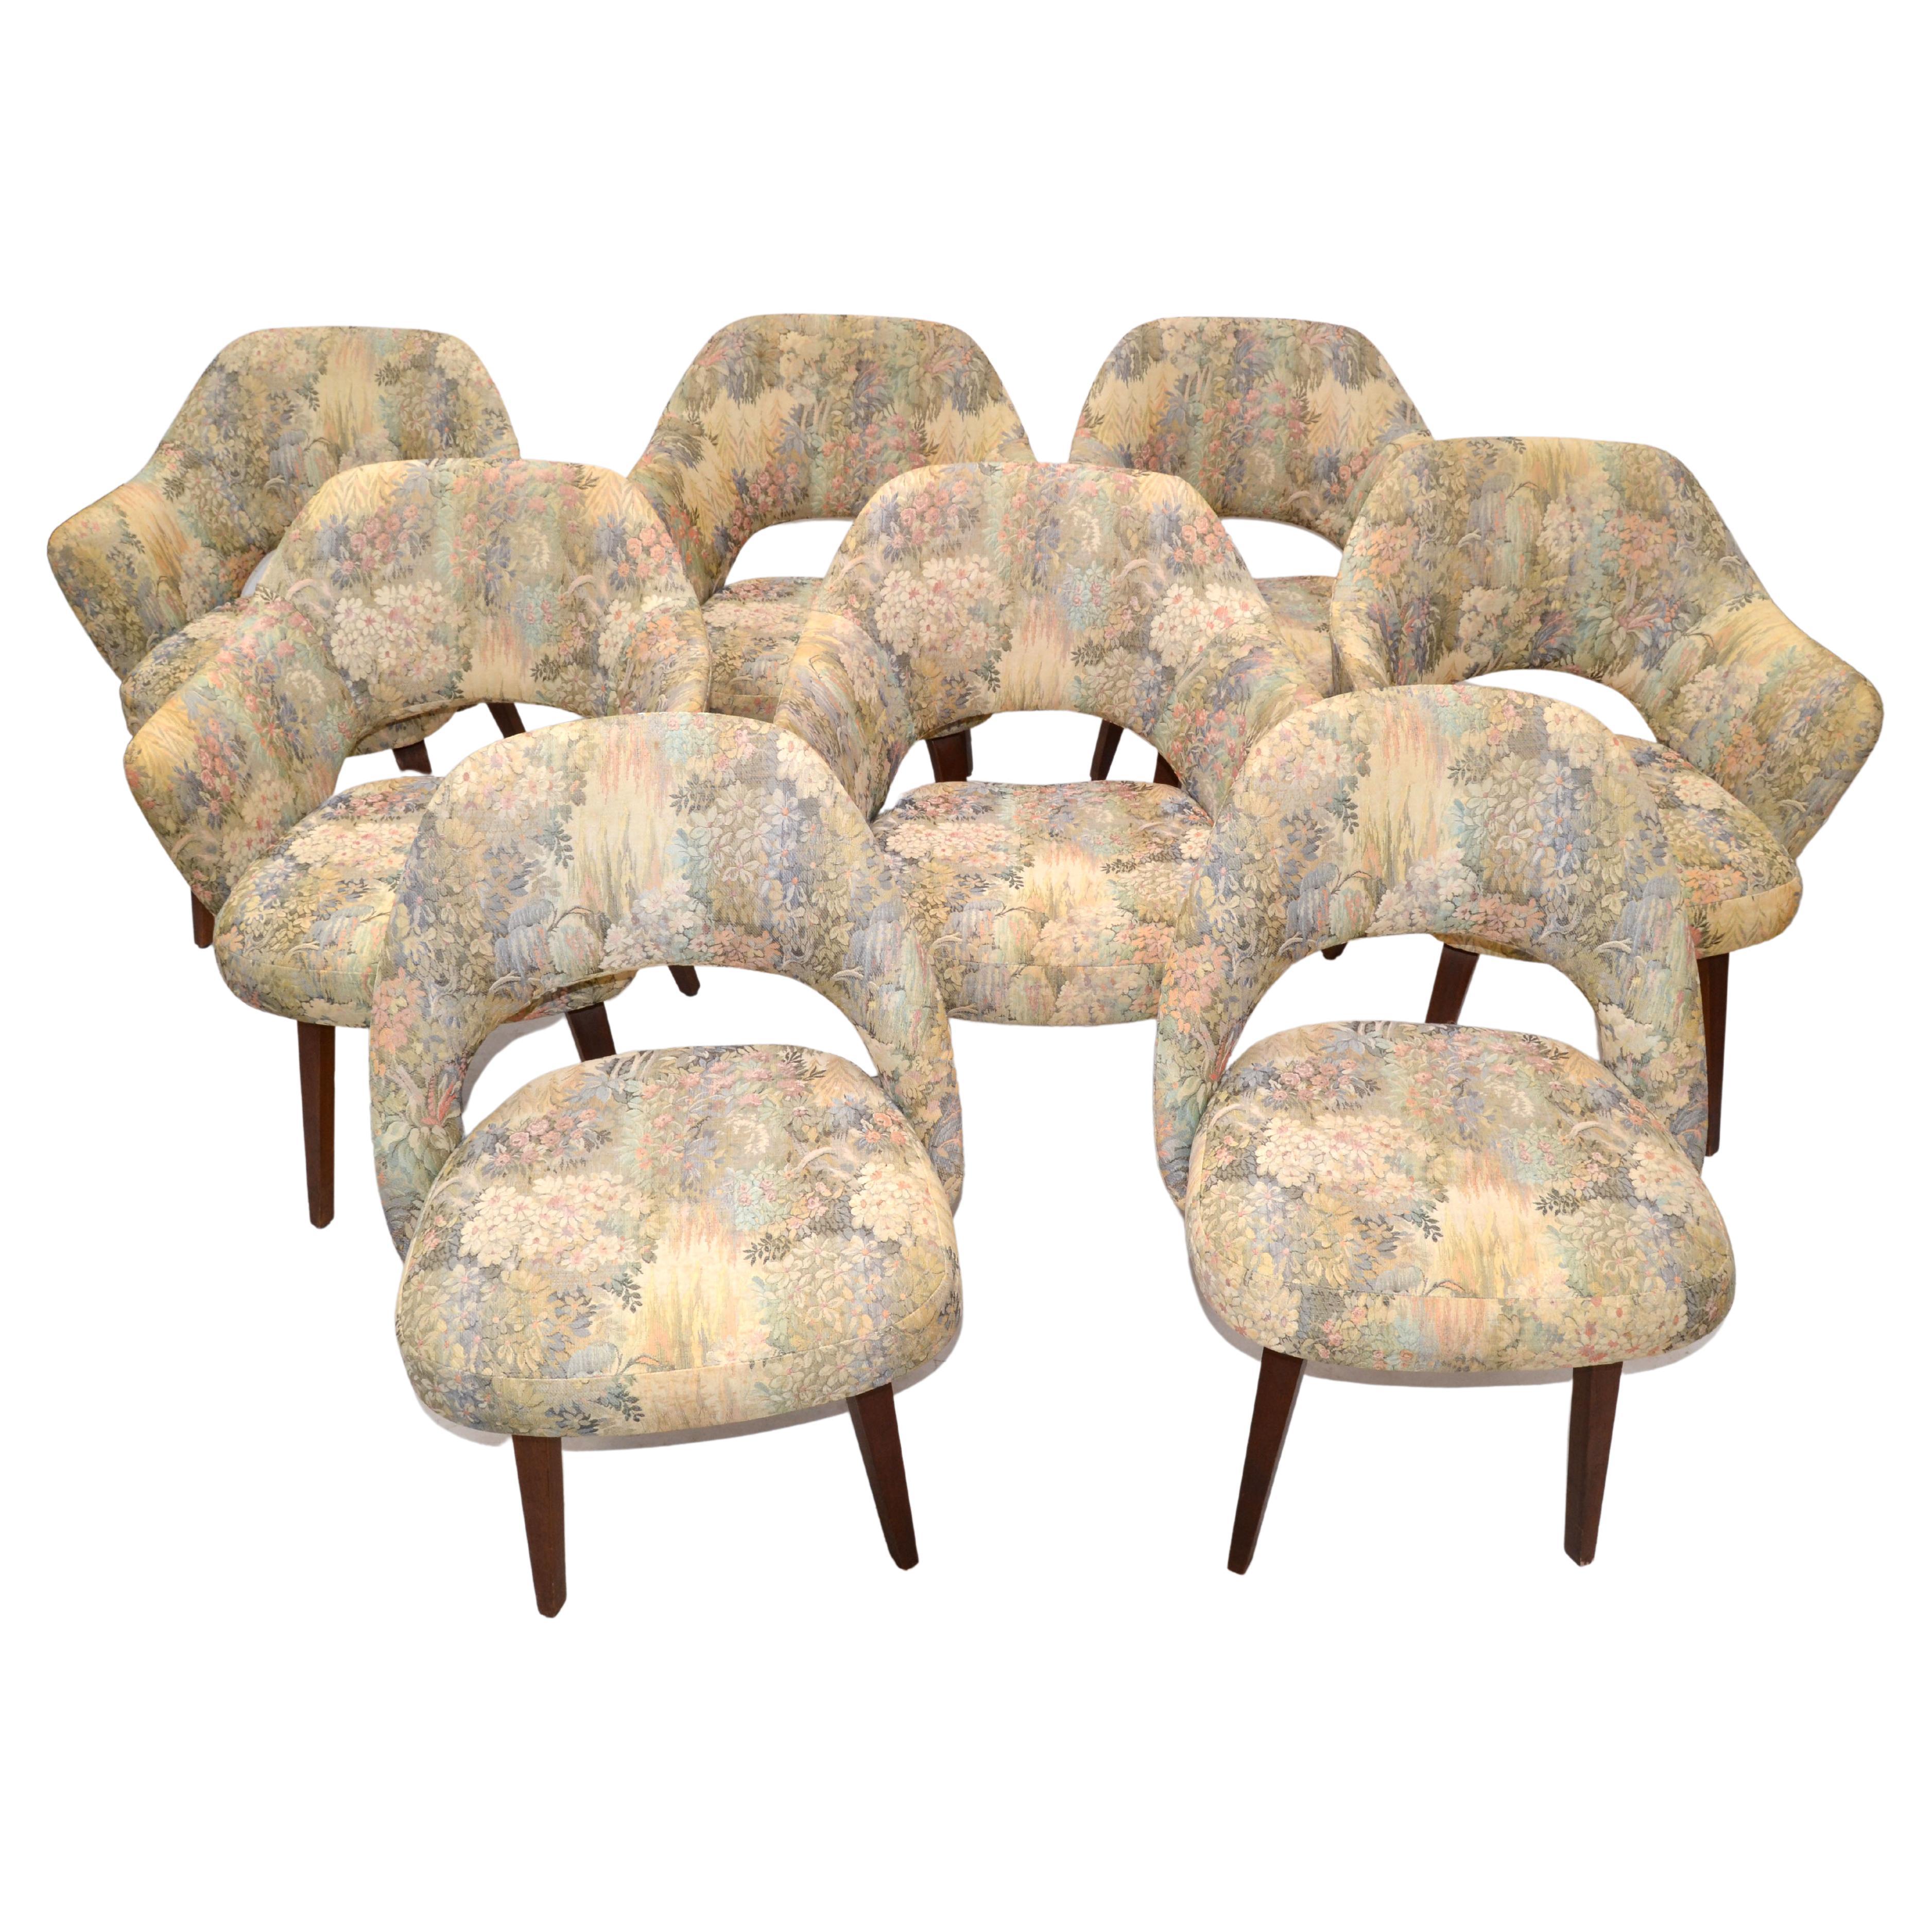 Set of 8 Eeero Saarinen Executive Knoll Dining Chairs Original Fabric Wood Legs